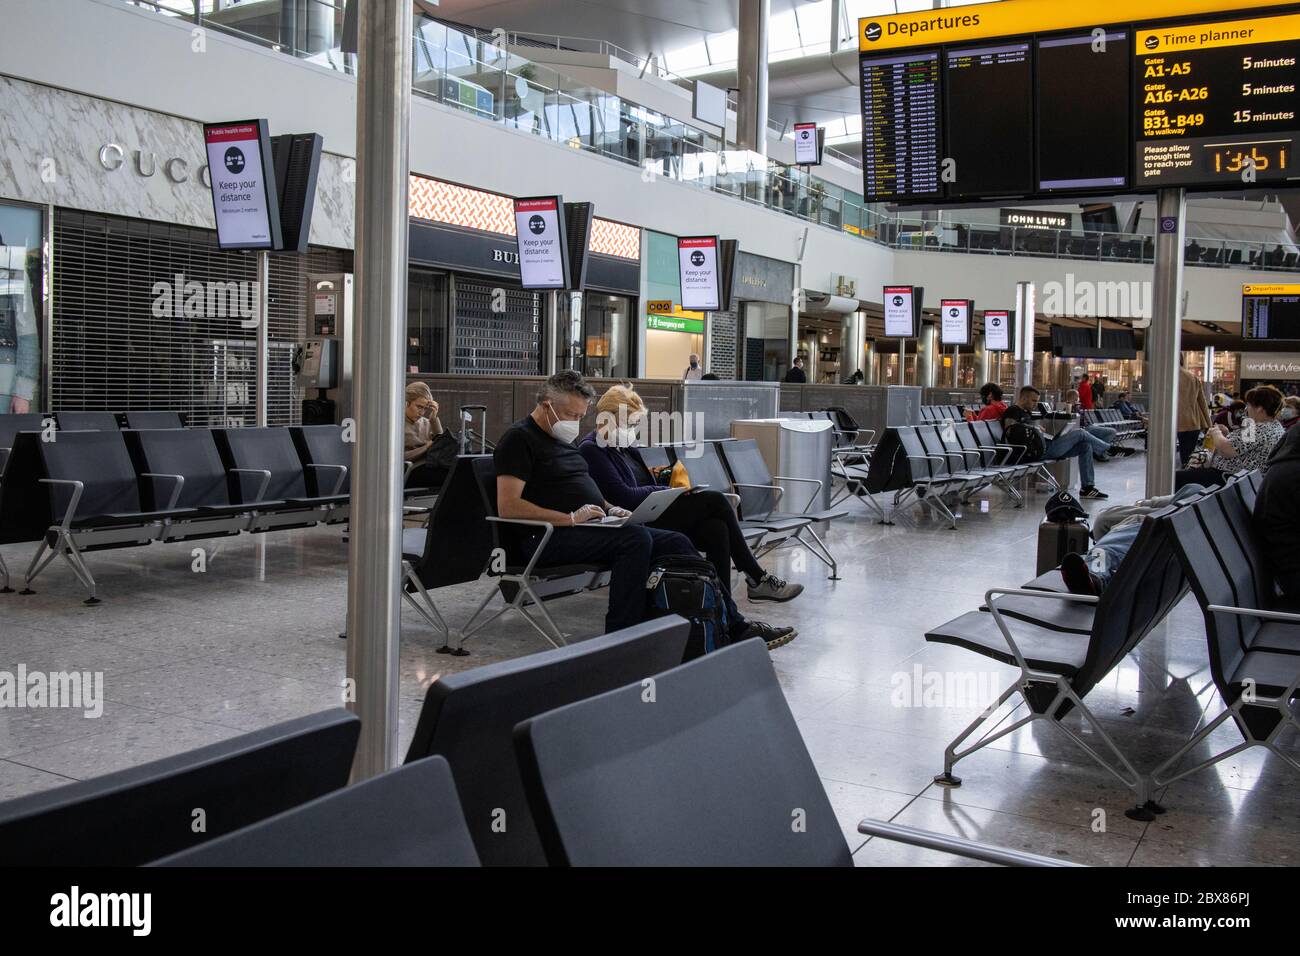 Les voyageurs attendent de sortir de Heathrow avant que les restrictions de quarantaine ne soient appliquées et les personnes qui reviennent doivent s'isoler pendant deux semaines. Banque D'Images